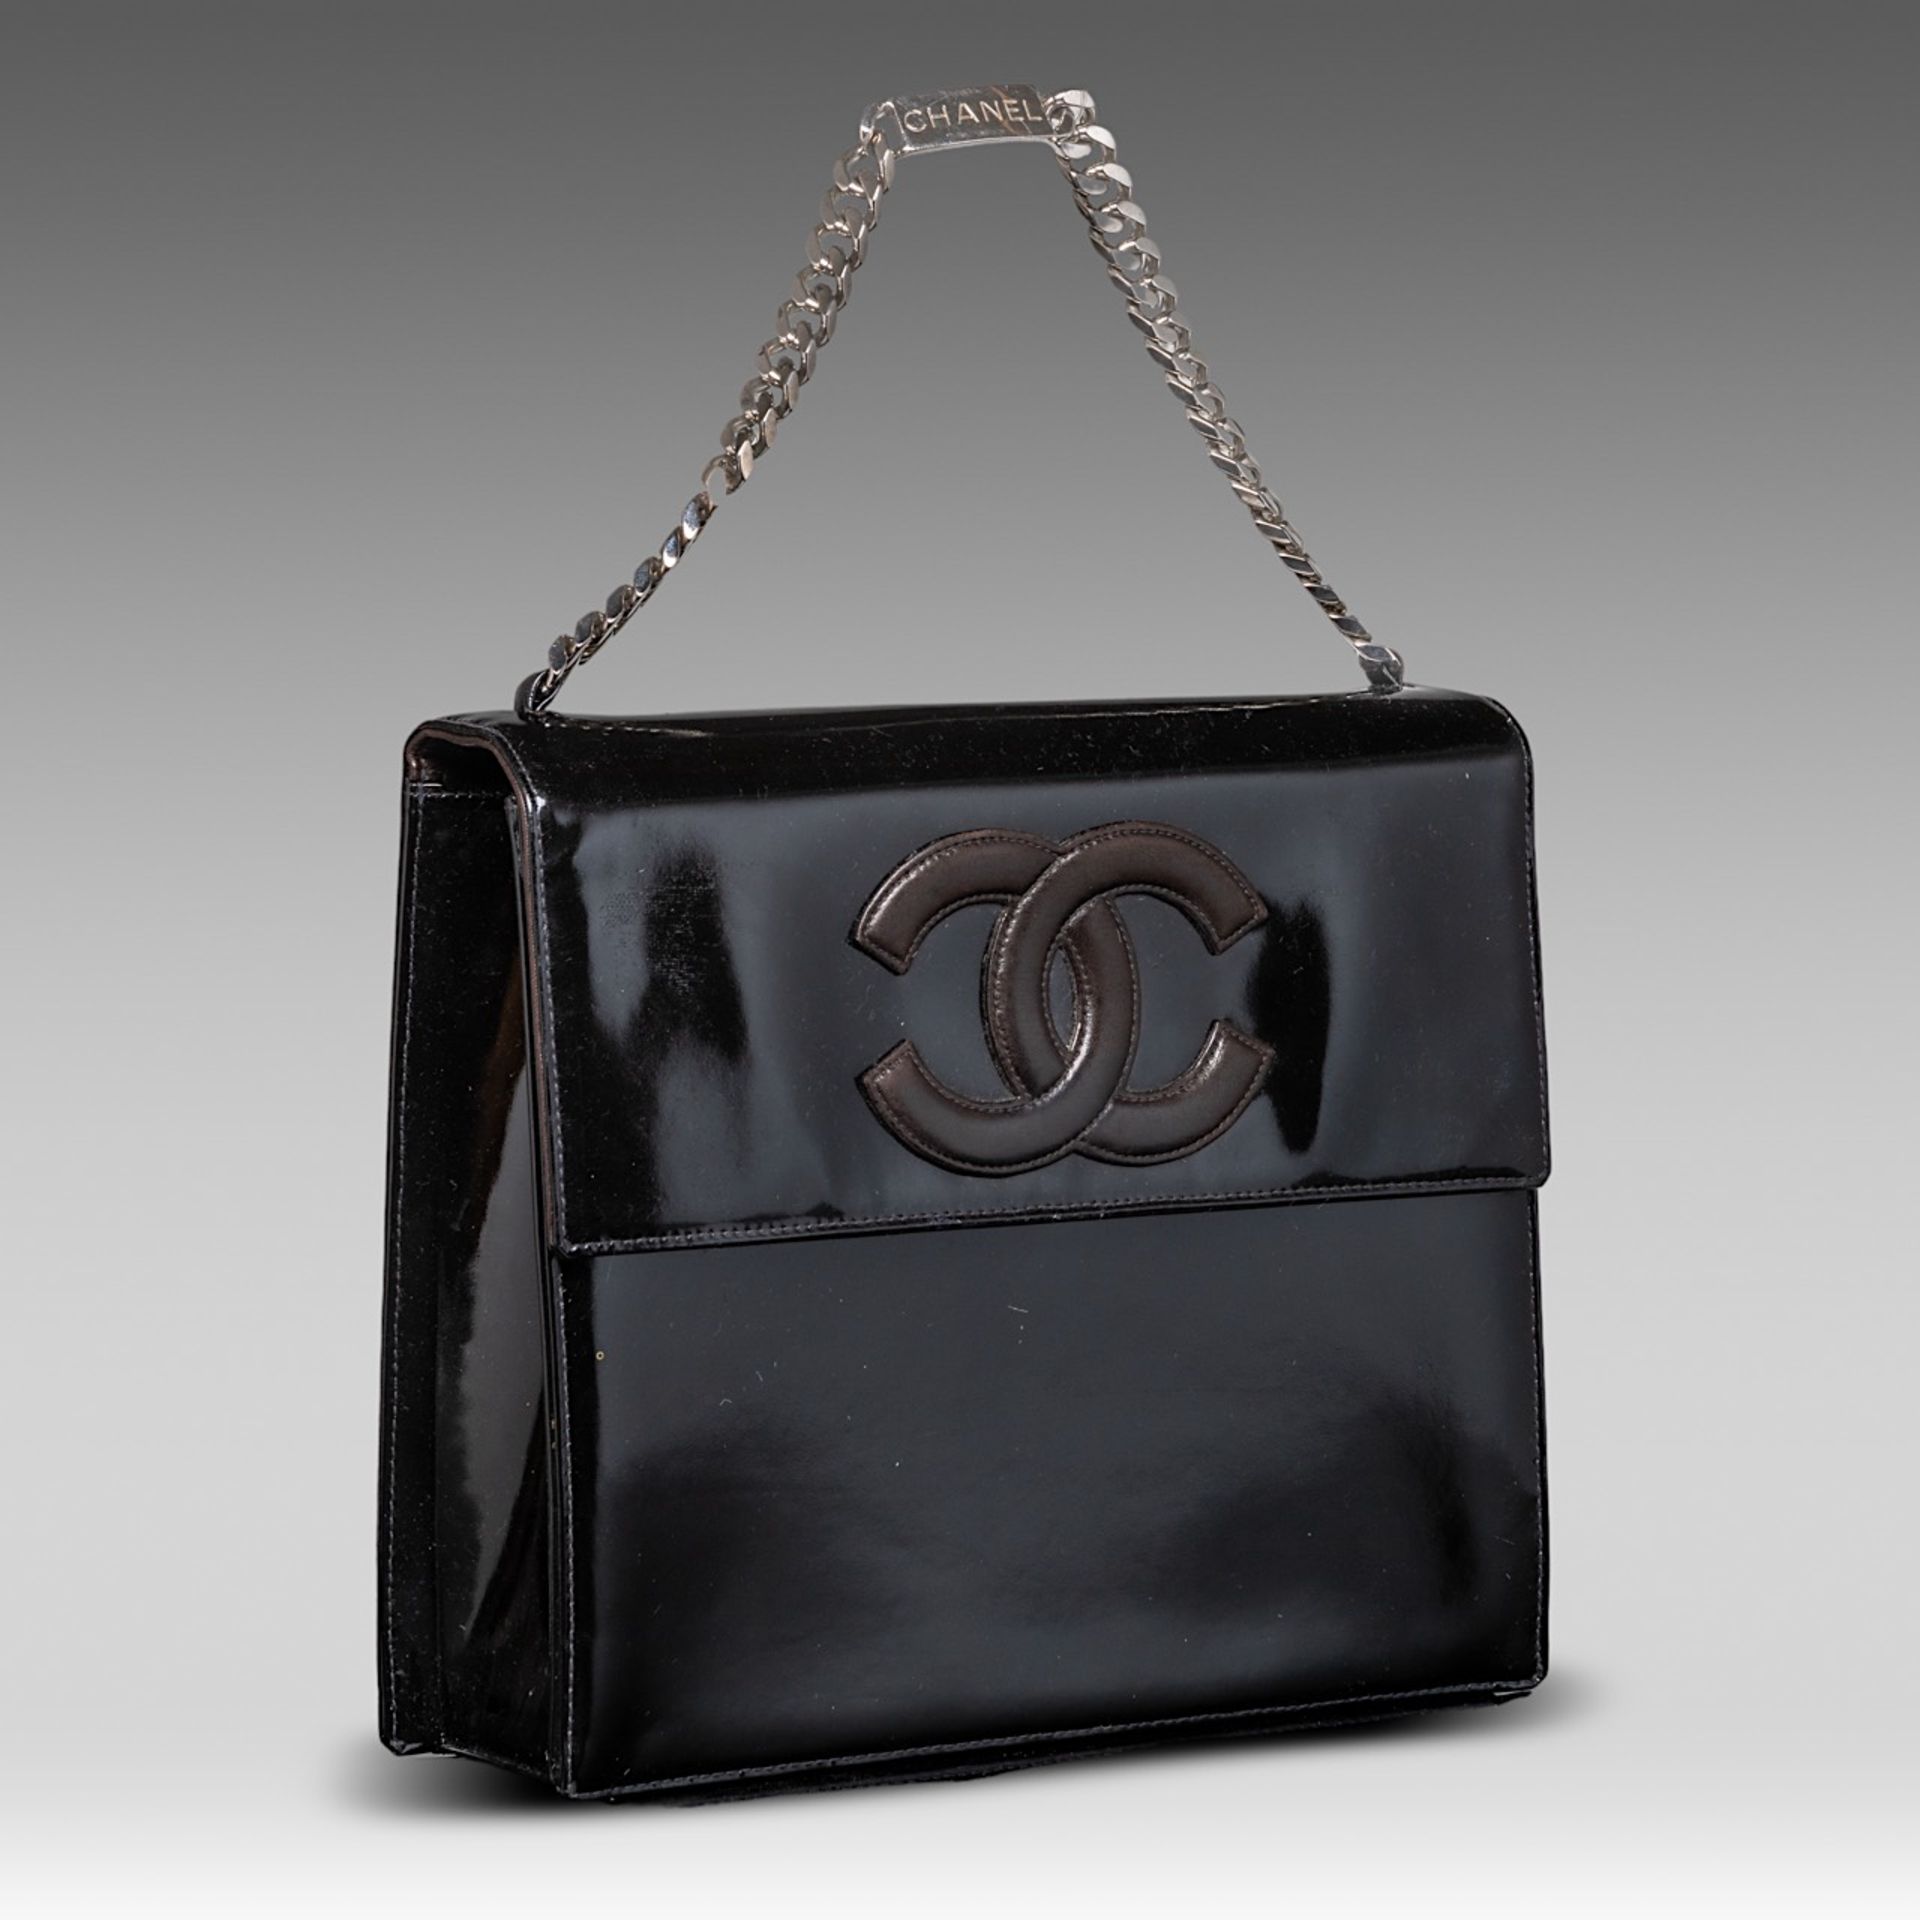 A Chanel flap handbag in black patent leather, H 22 - W 25 - D 8 cm - Bild 2 aus 10